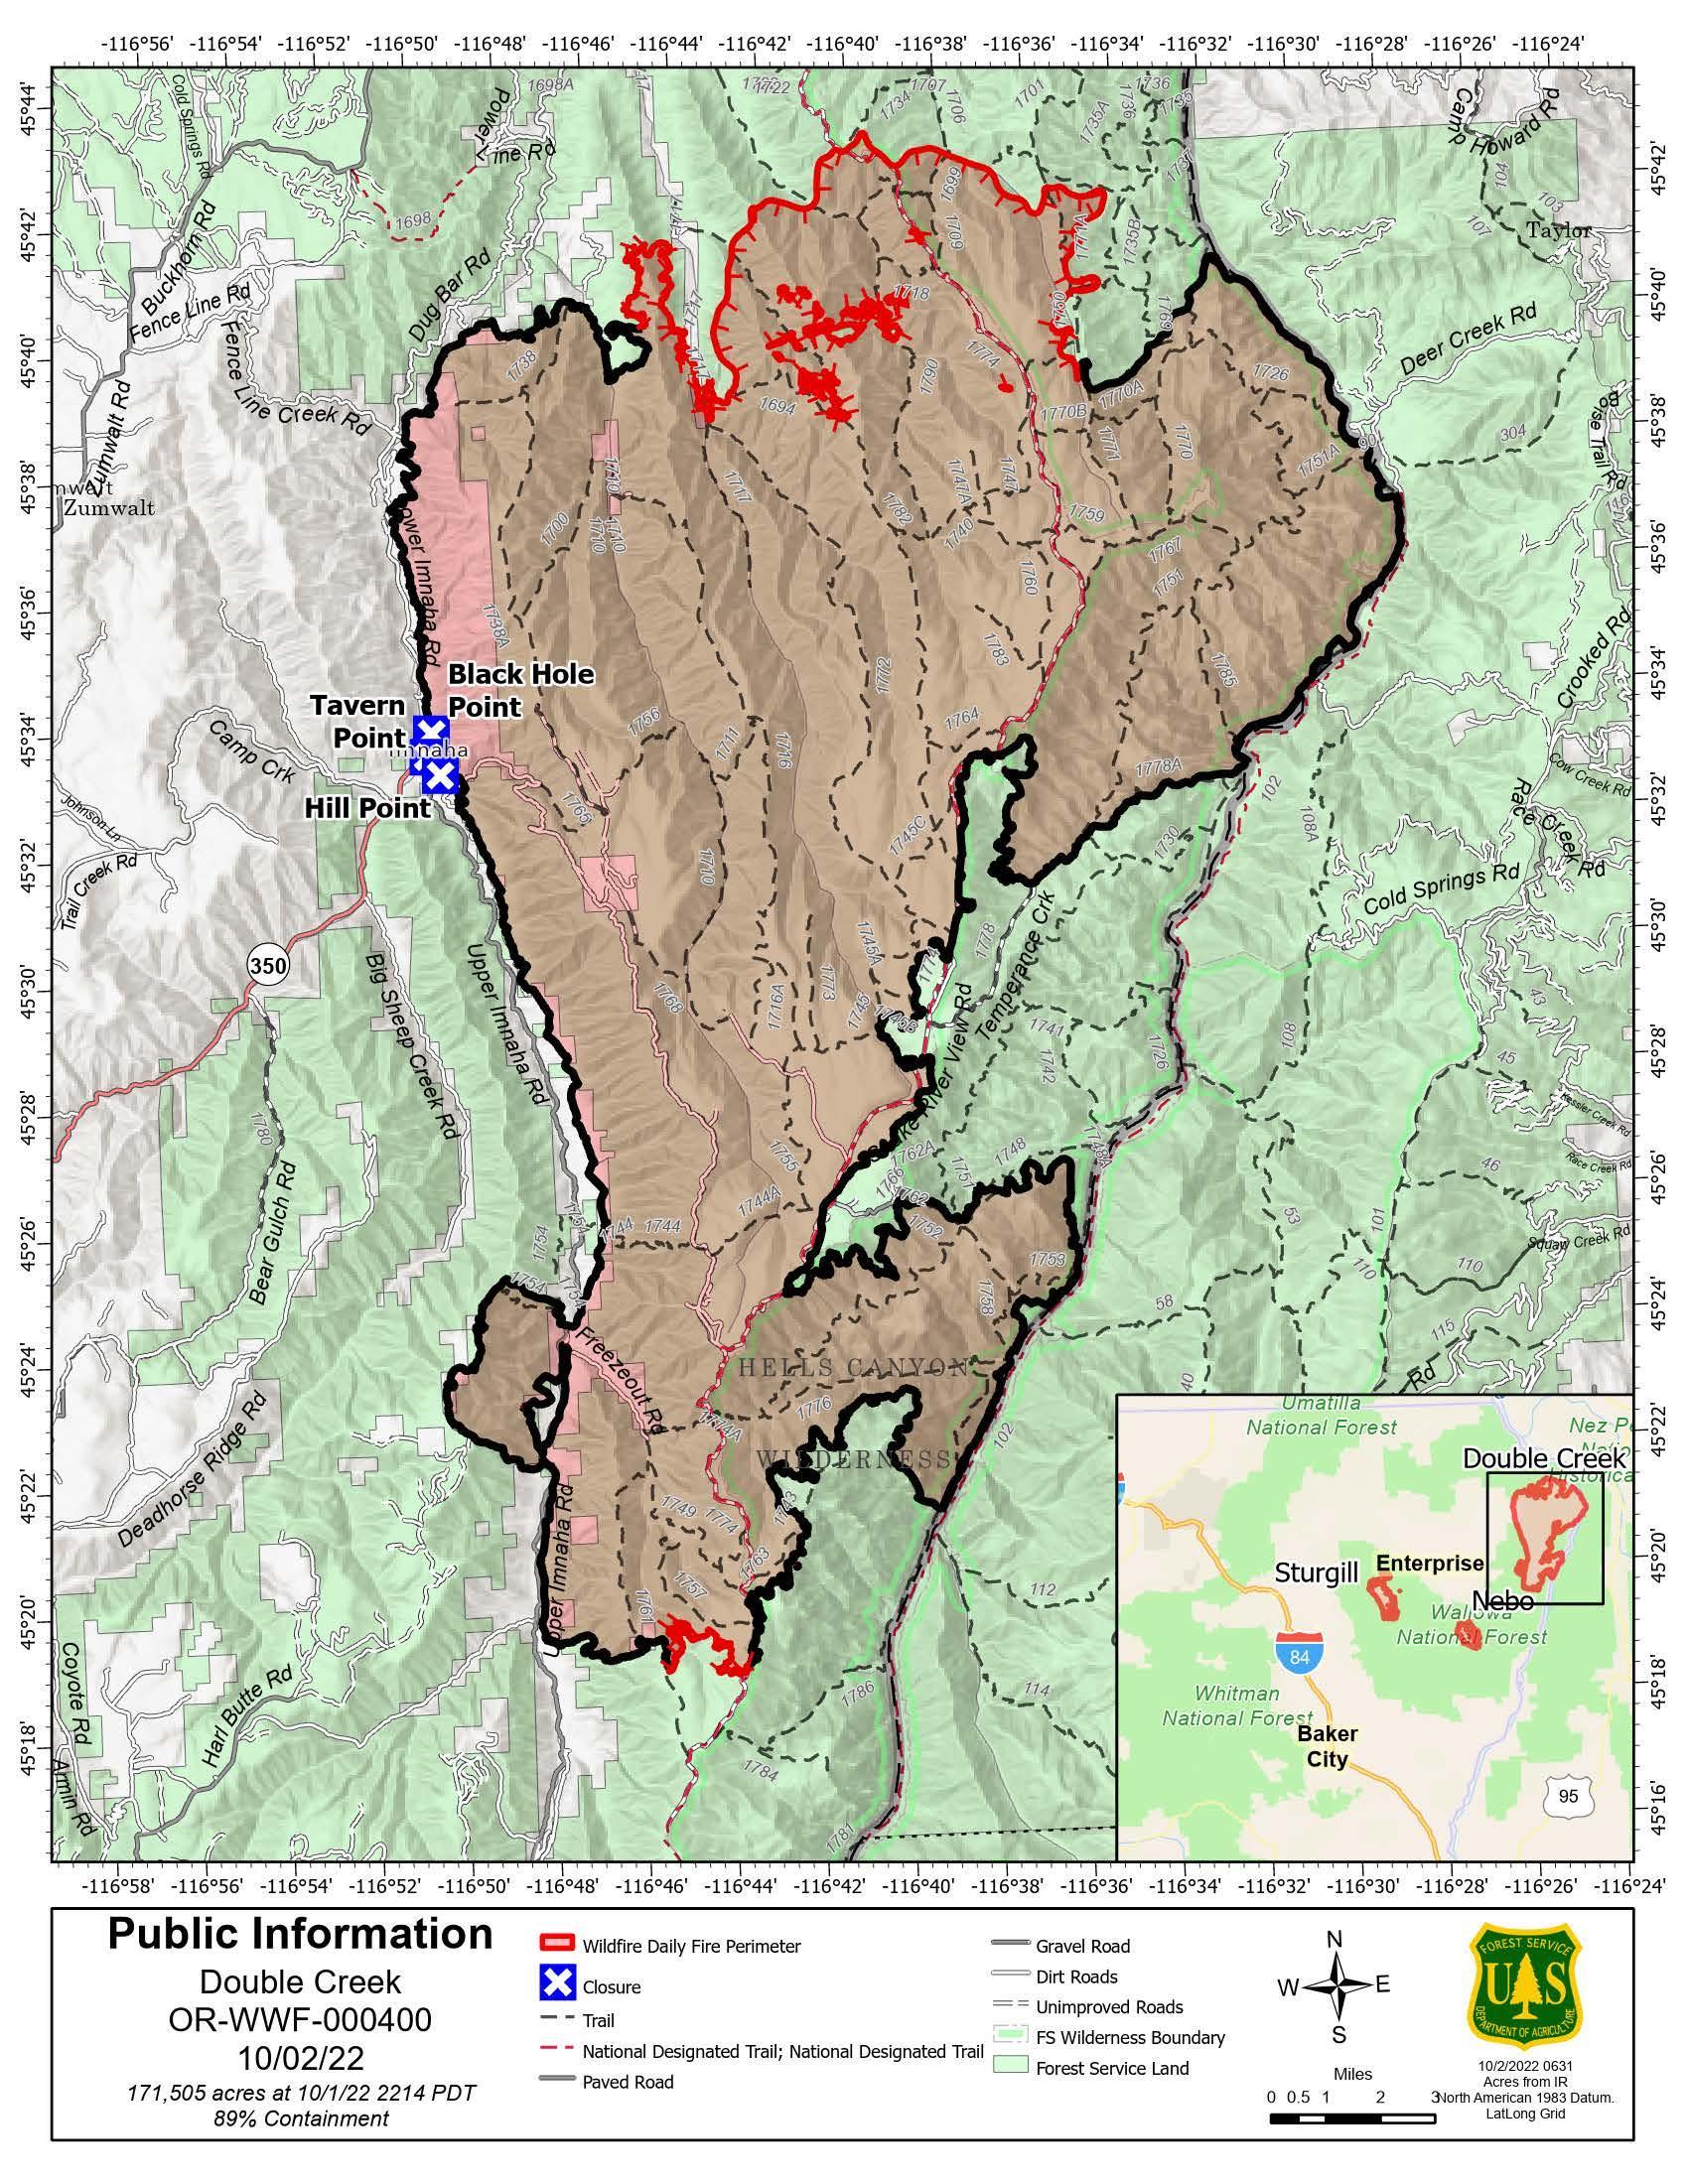 Double Creek Fire Map - 20221002